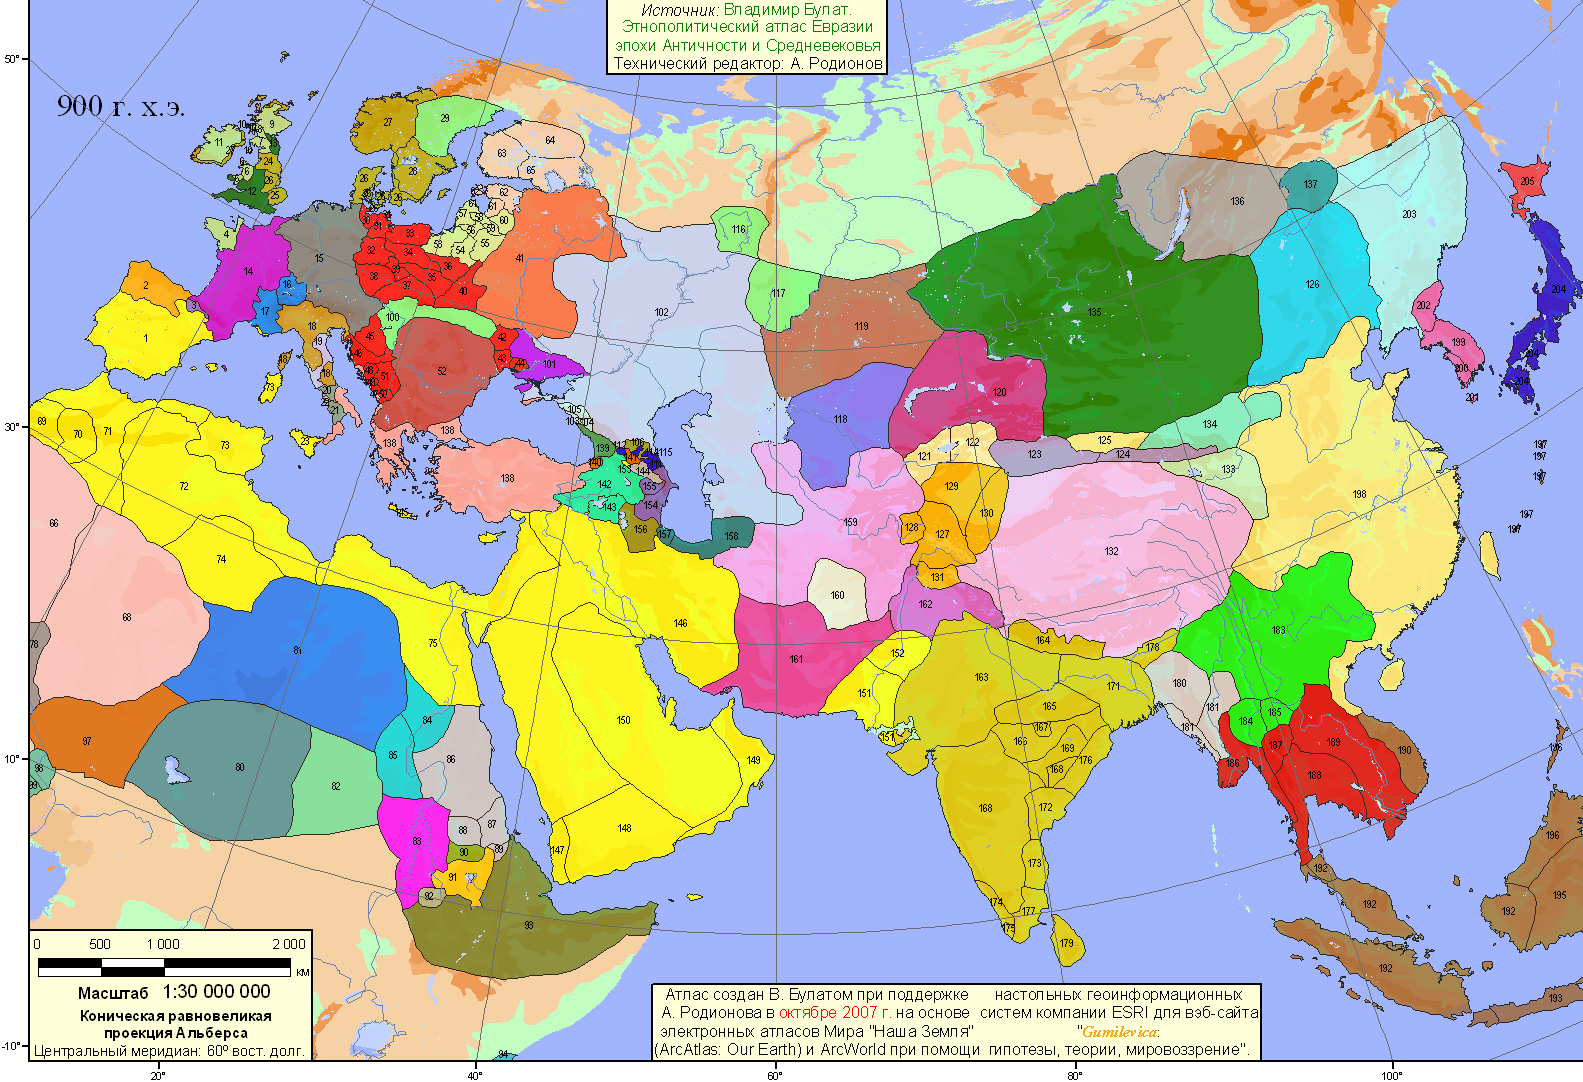 Eurasia - 900 AD (211215 bytes)